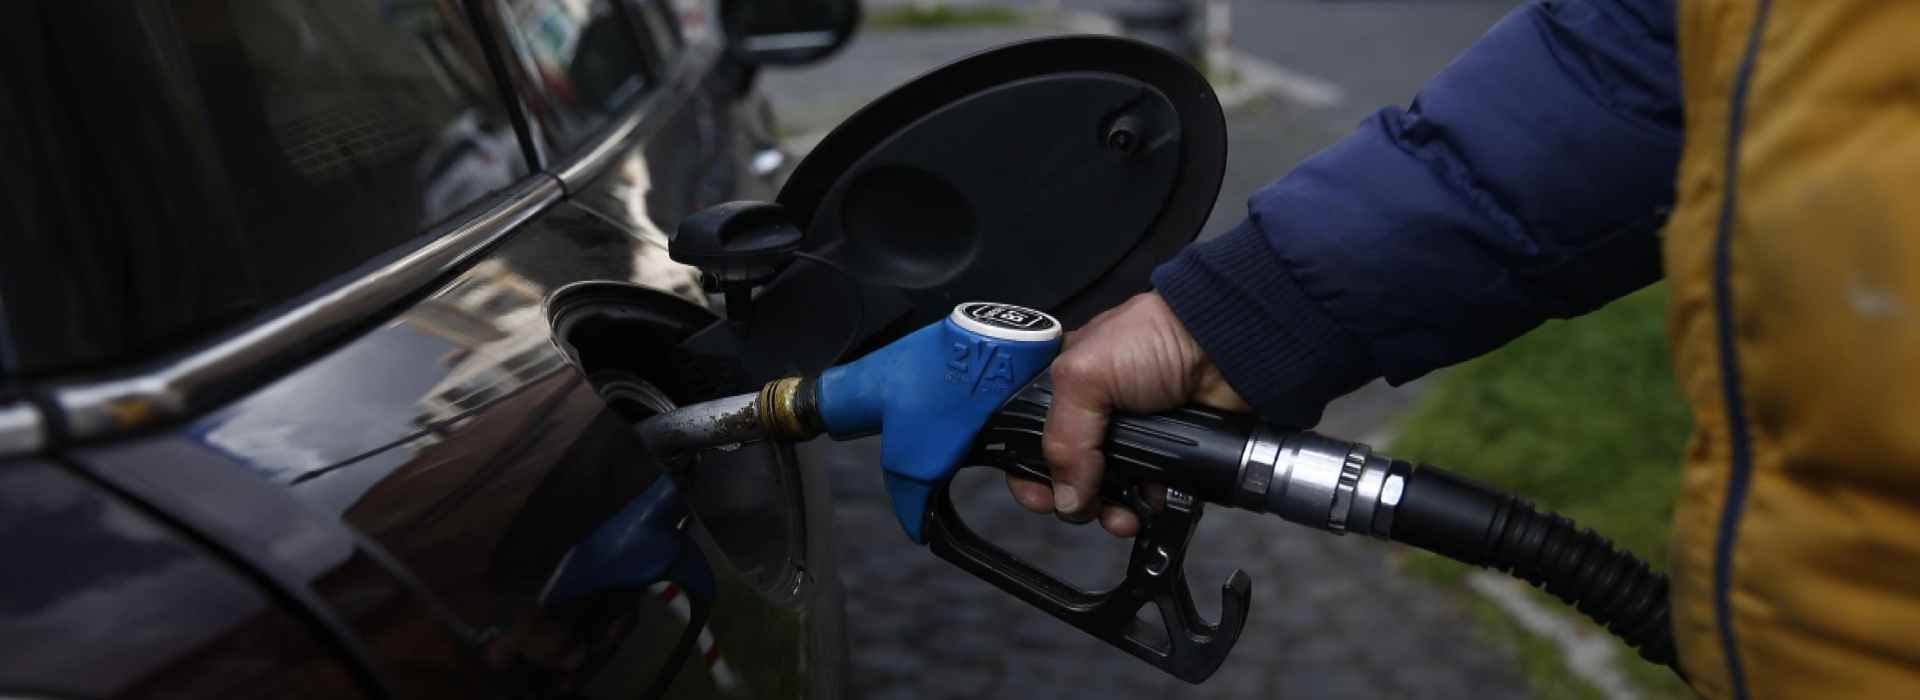 Decreto energia: benzina taglio alle accise da 0,25 centesimi al litro